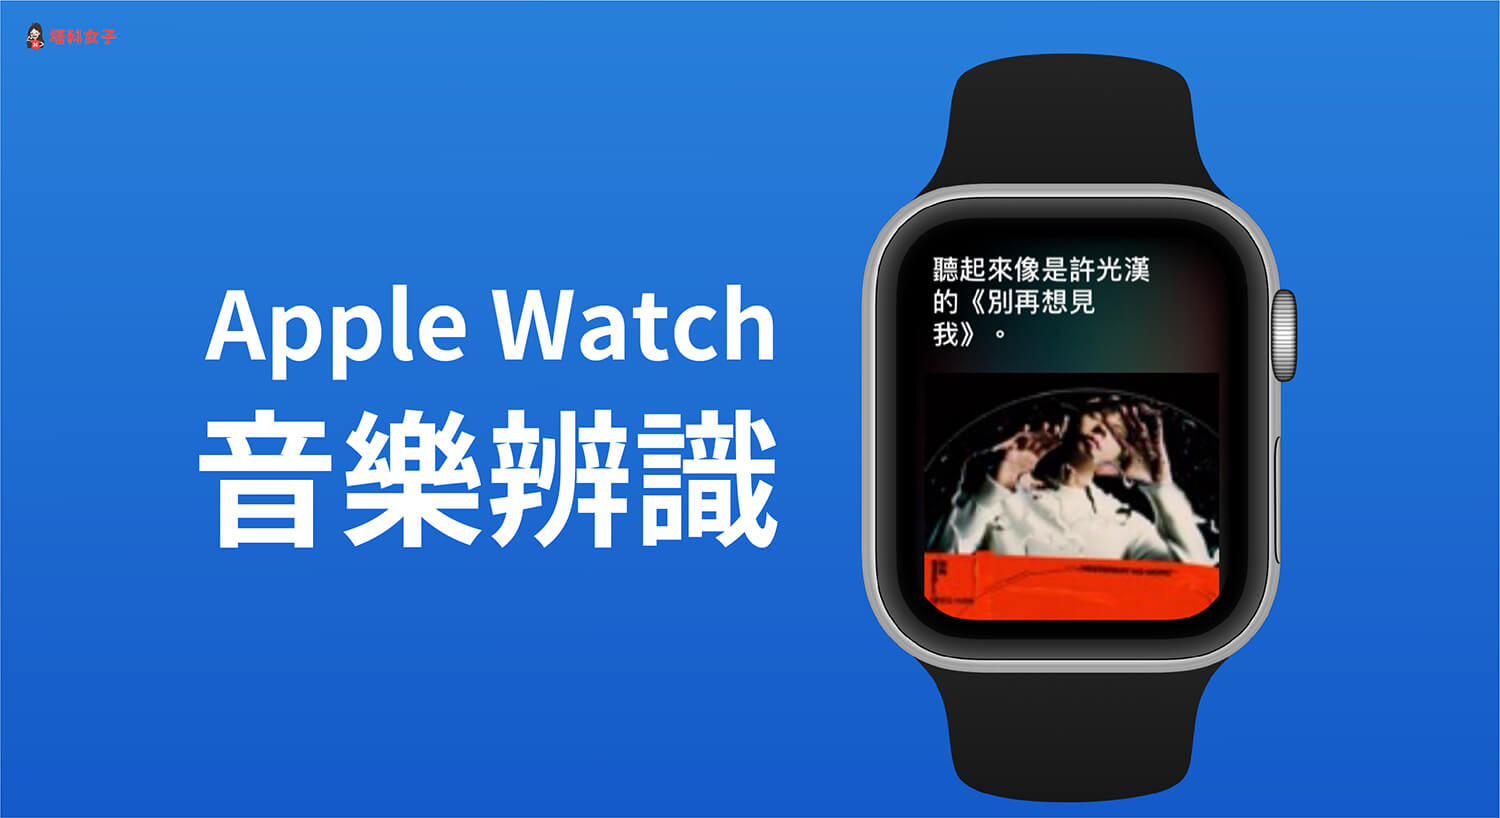 Apple Watch 如何使用音樂辨識？教你這招搜尋目前播放的歌曲